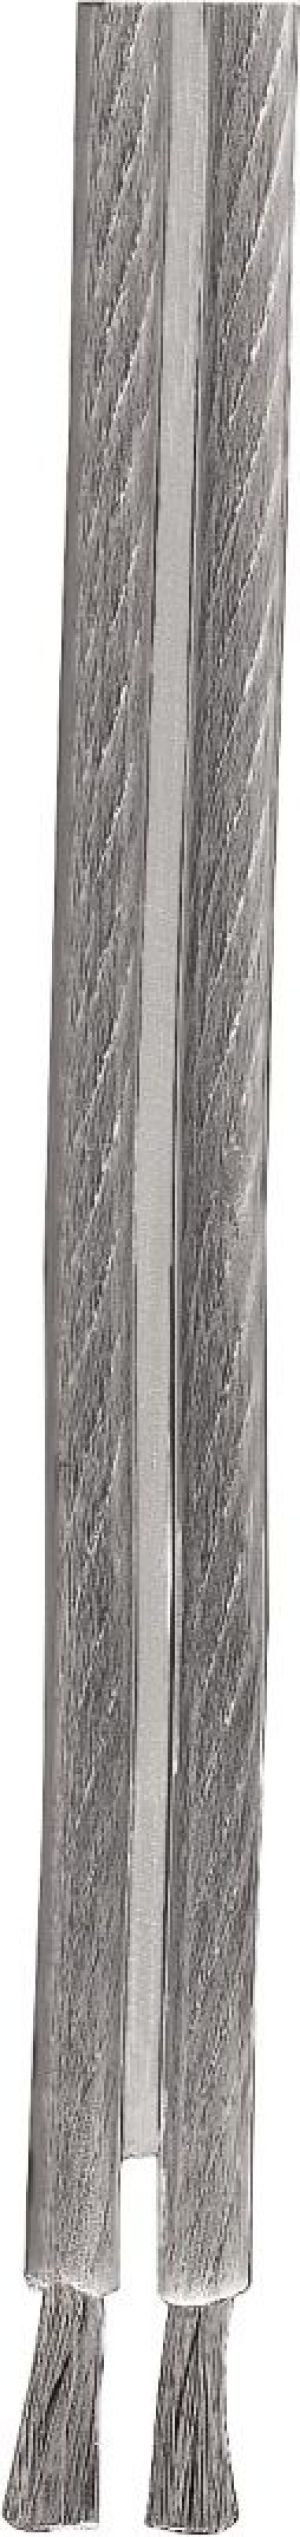 Przewód Hama Kabel głośnikowy 2x 1,5 mm2, 200m, srebrny / transparentny ( 866560000 ) 1